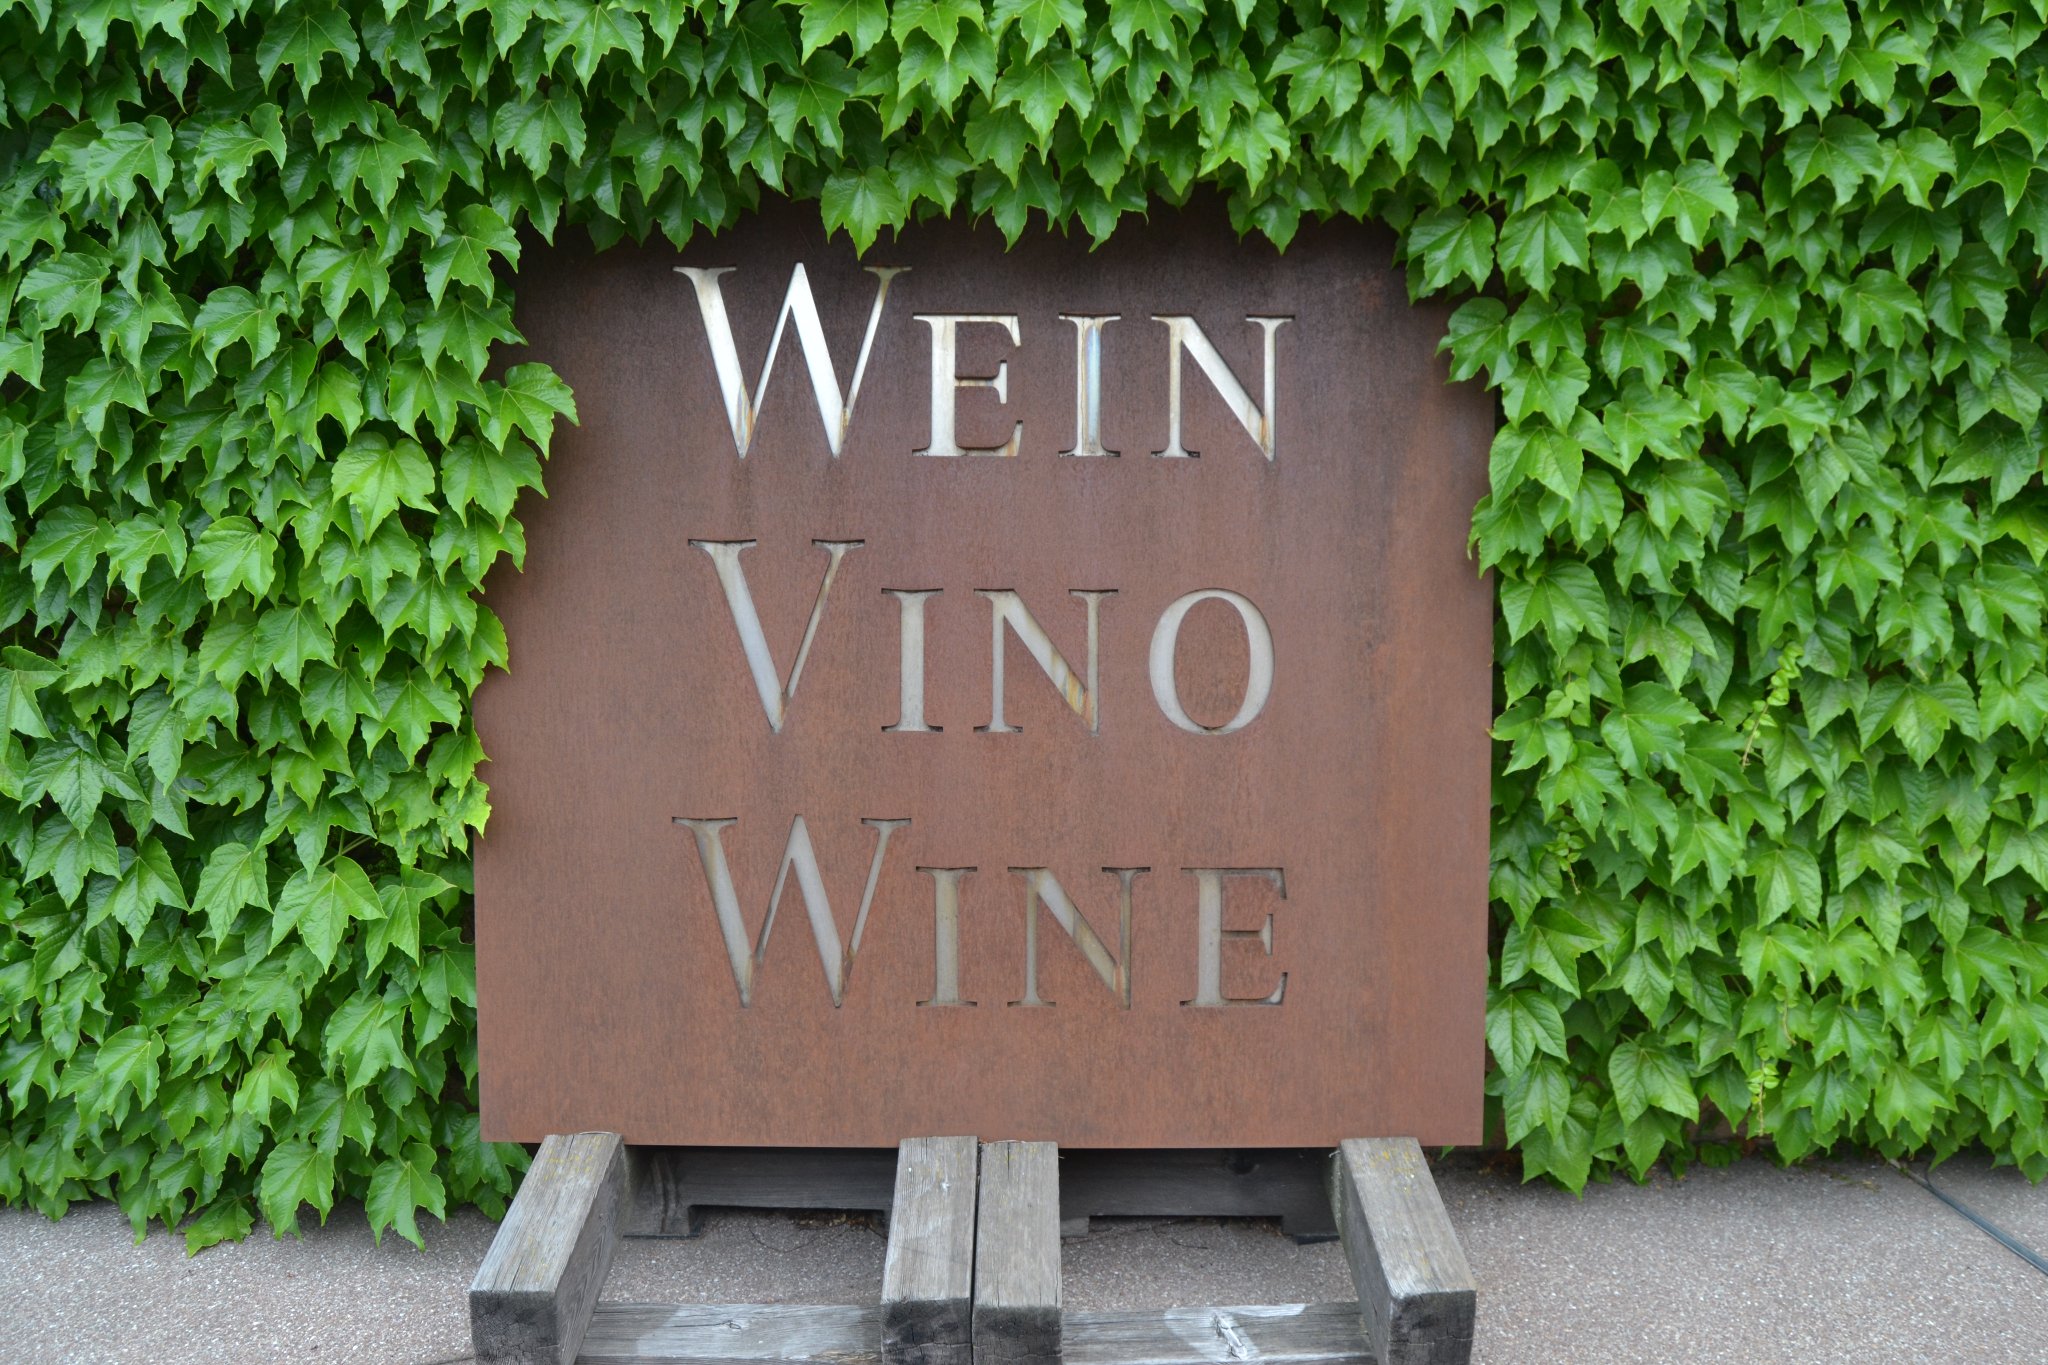 Qui tutti amano il vino, si intendono di vino, parlano di vino, siamo in Alto Adige